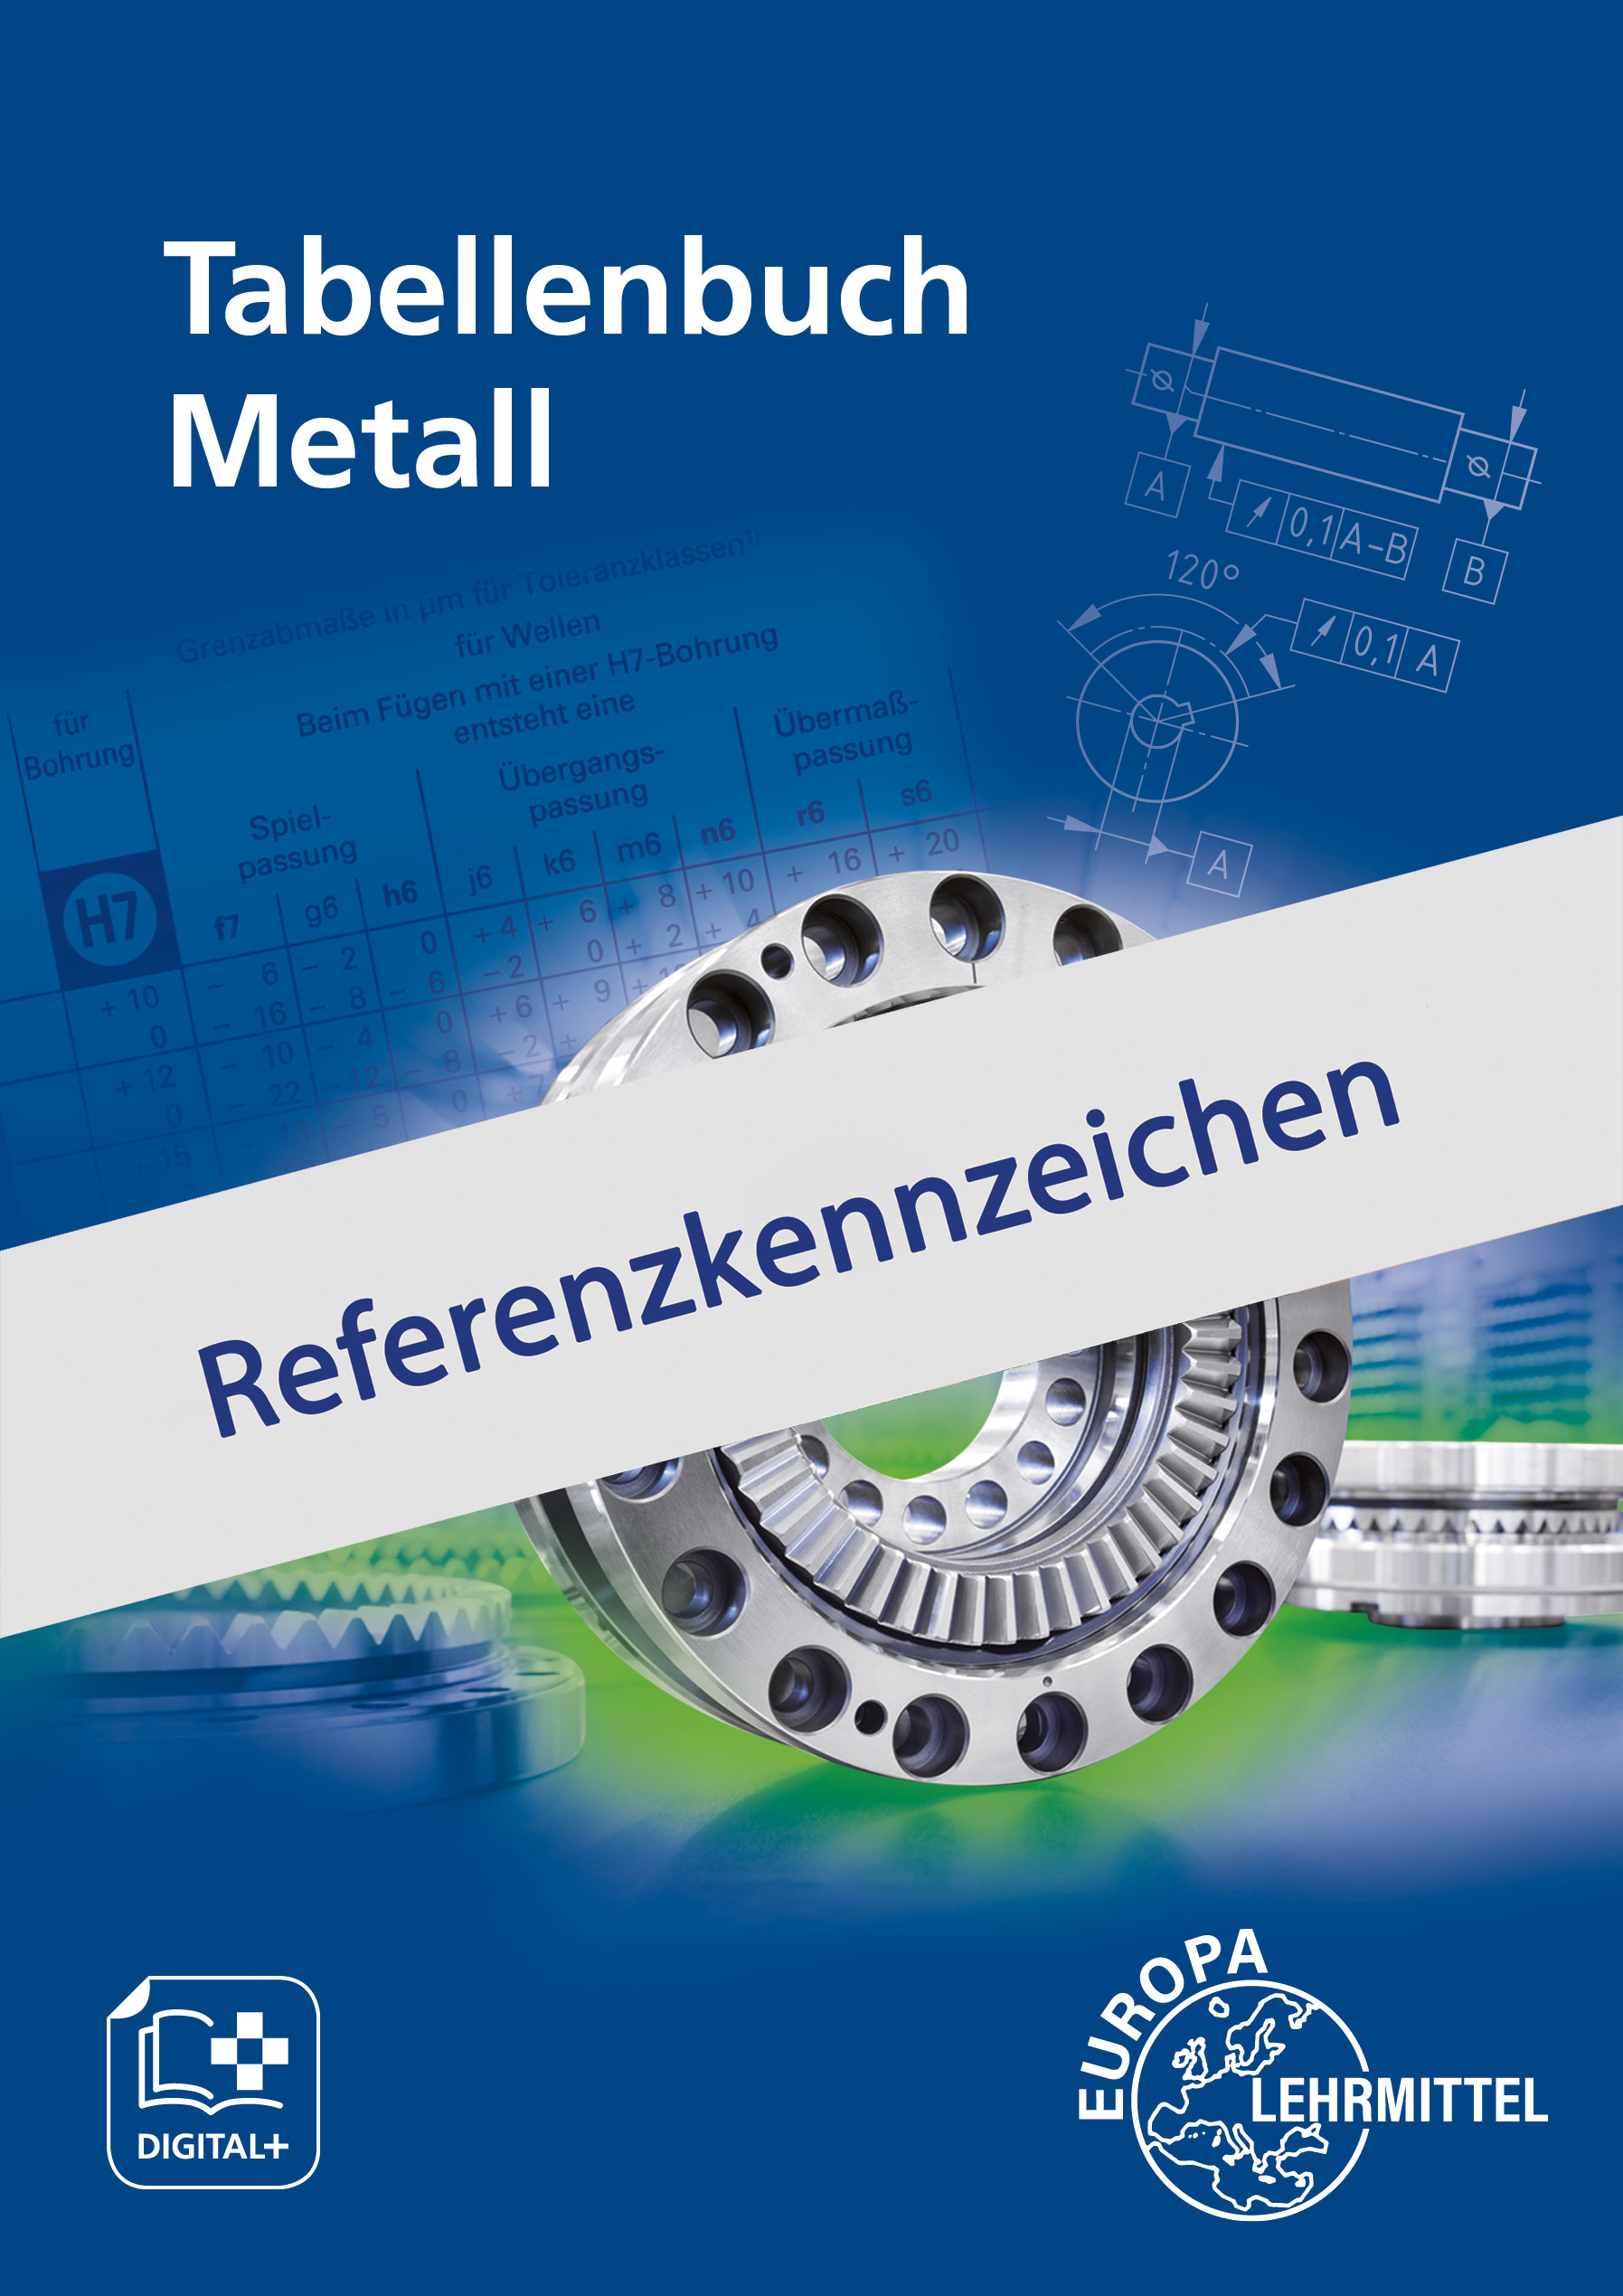 Begleitmaterial zu Tabellenbuch Metall - Referenzkennzeichen - Download Paket